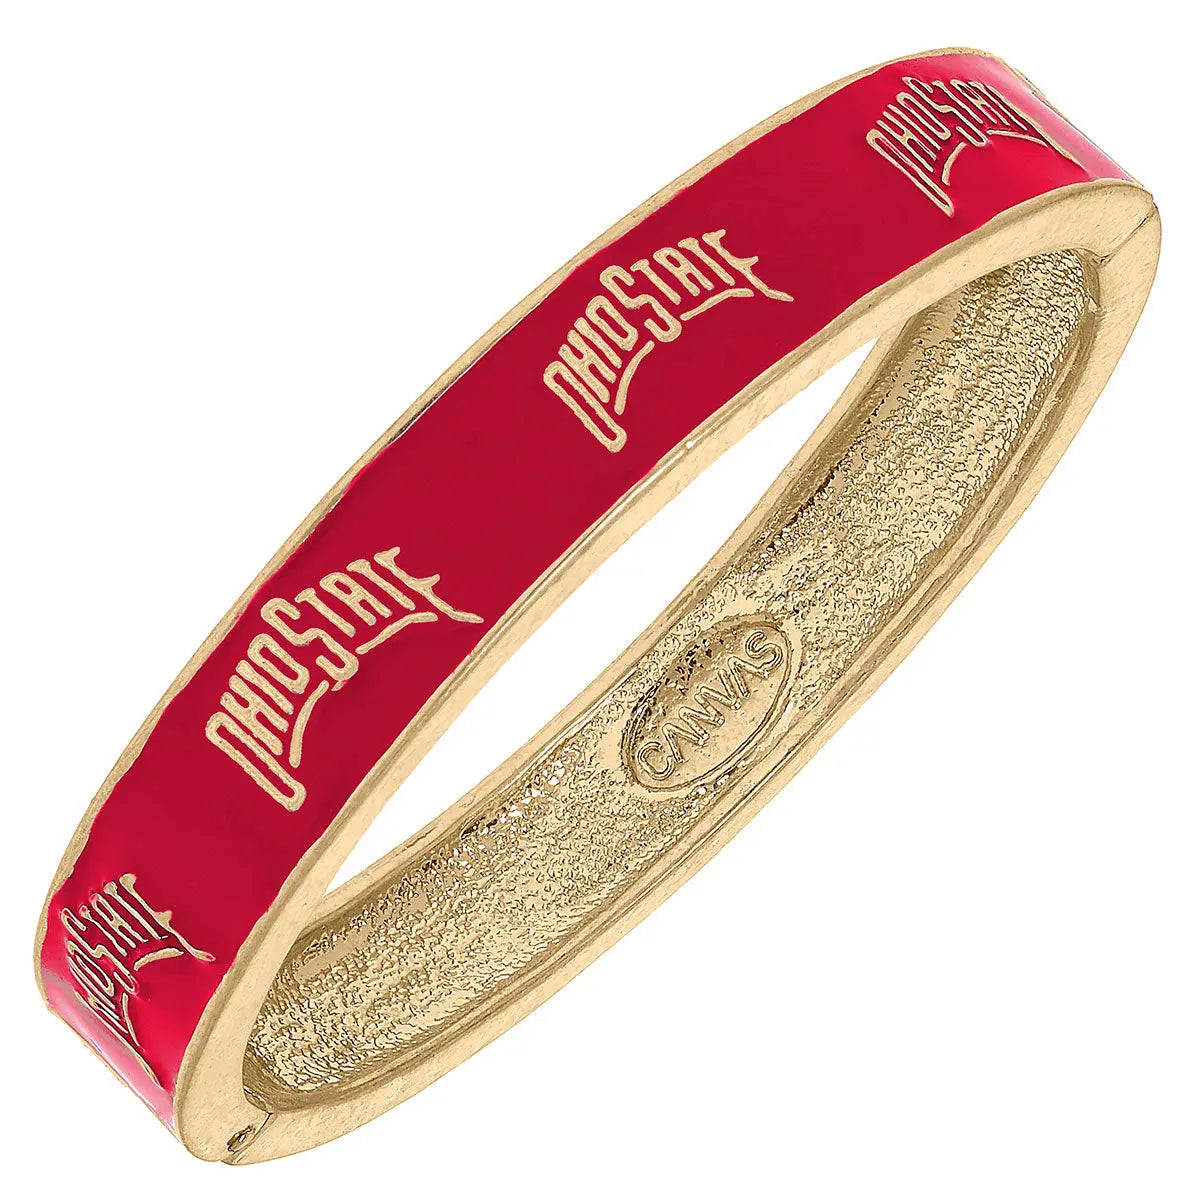 Ohio State Buckeyes Enamel Bracelet - Scarlet